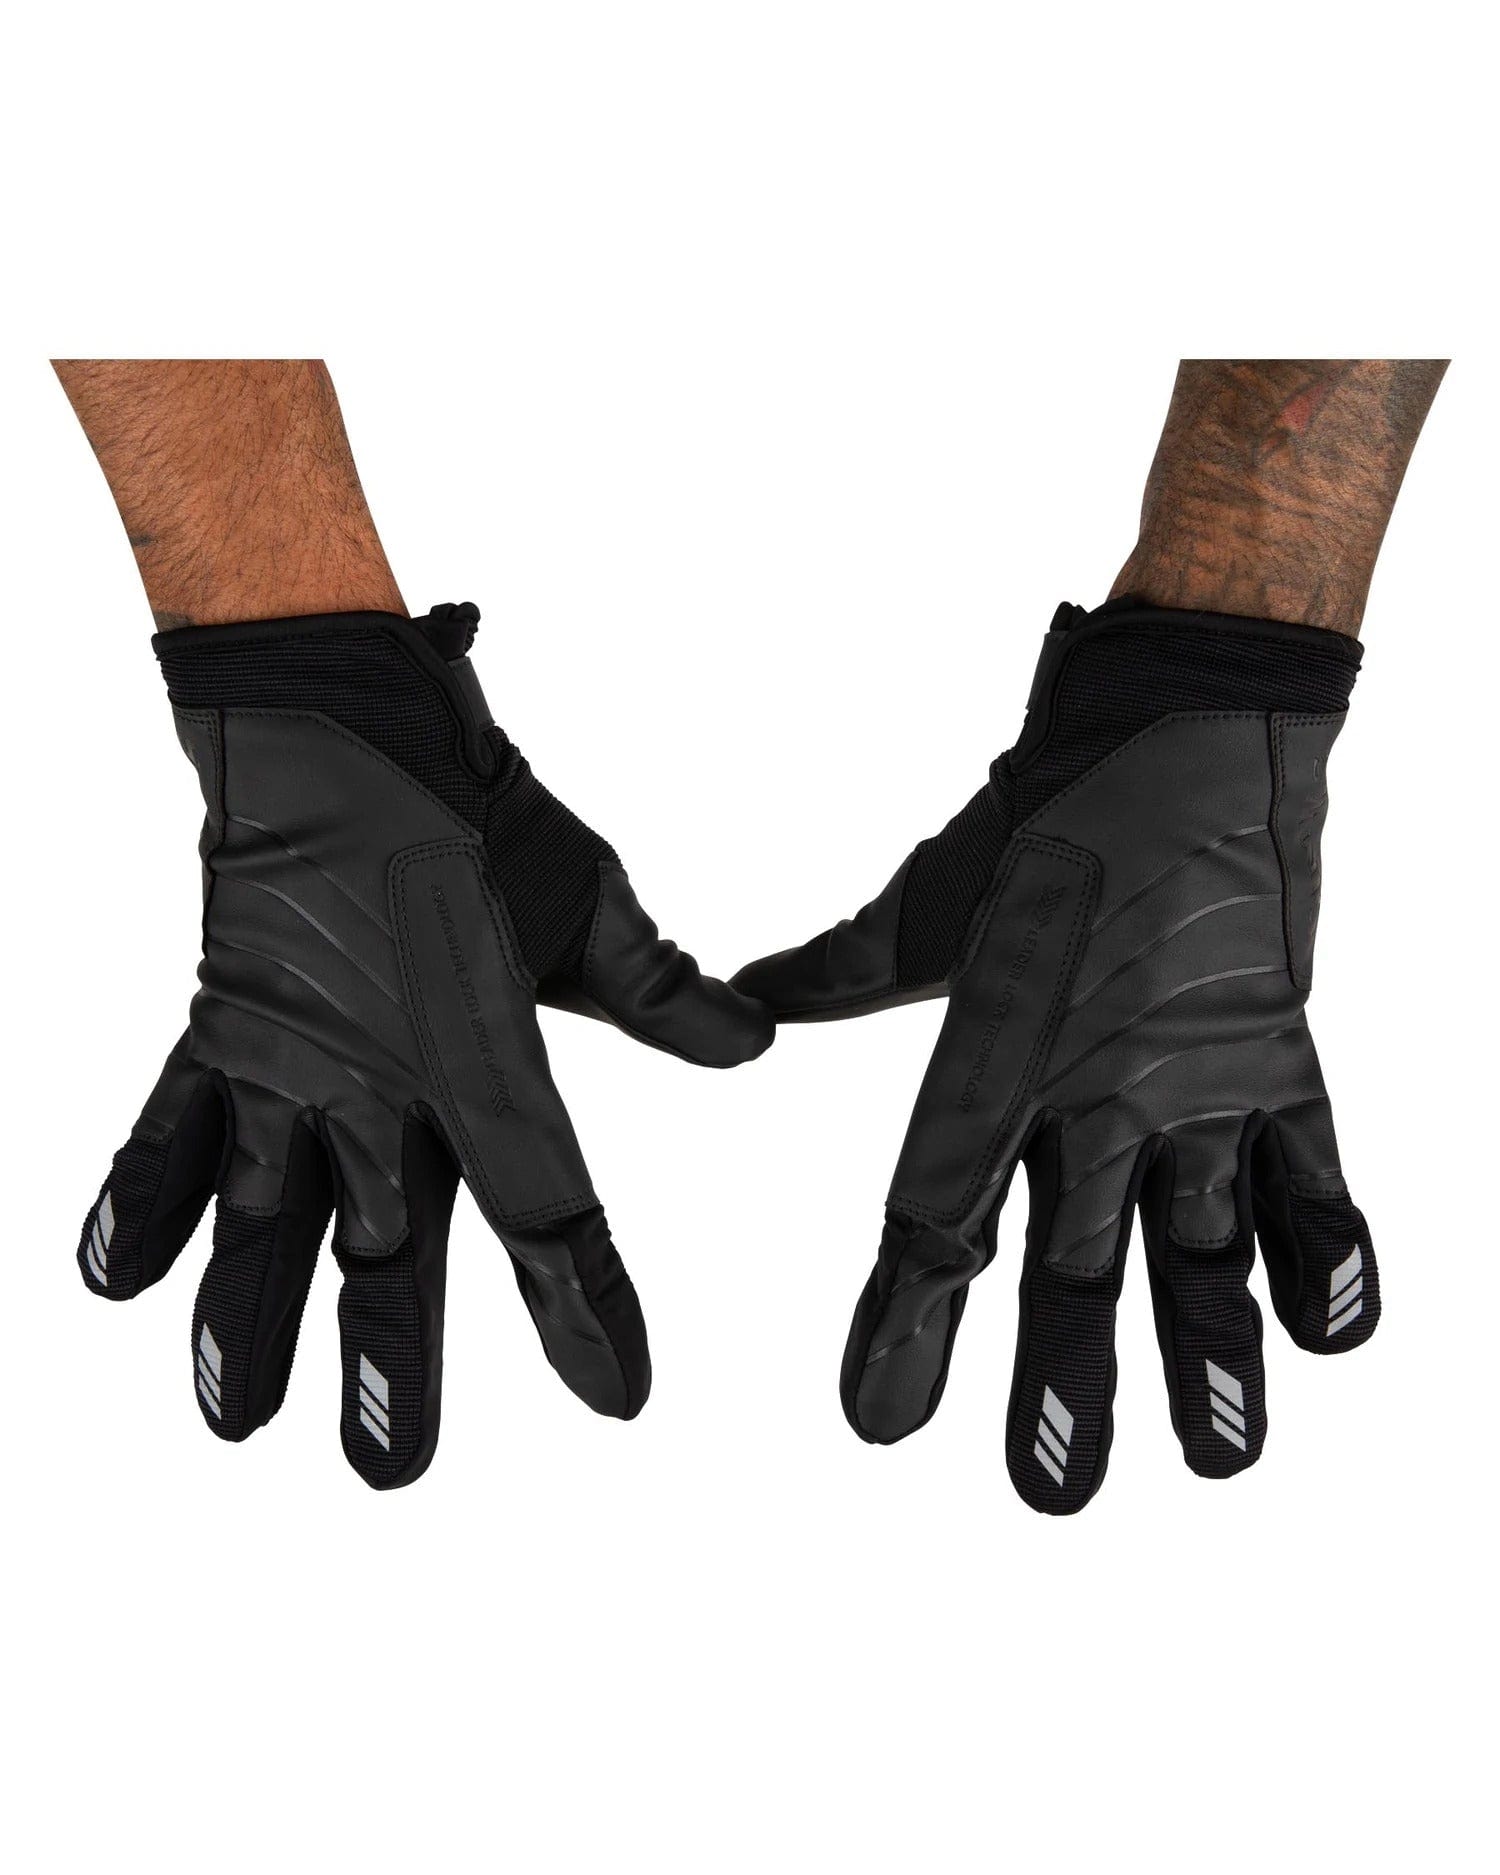 Simms Offshore Angler's Gloves Medium